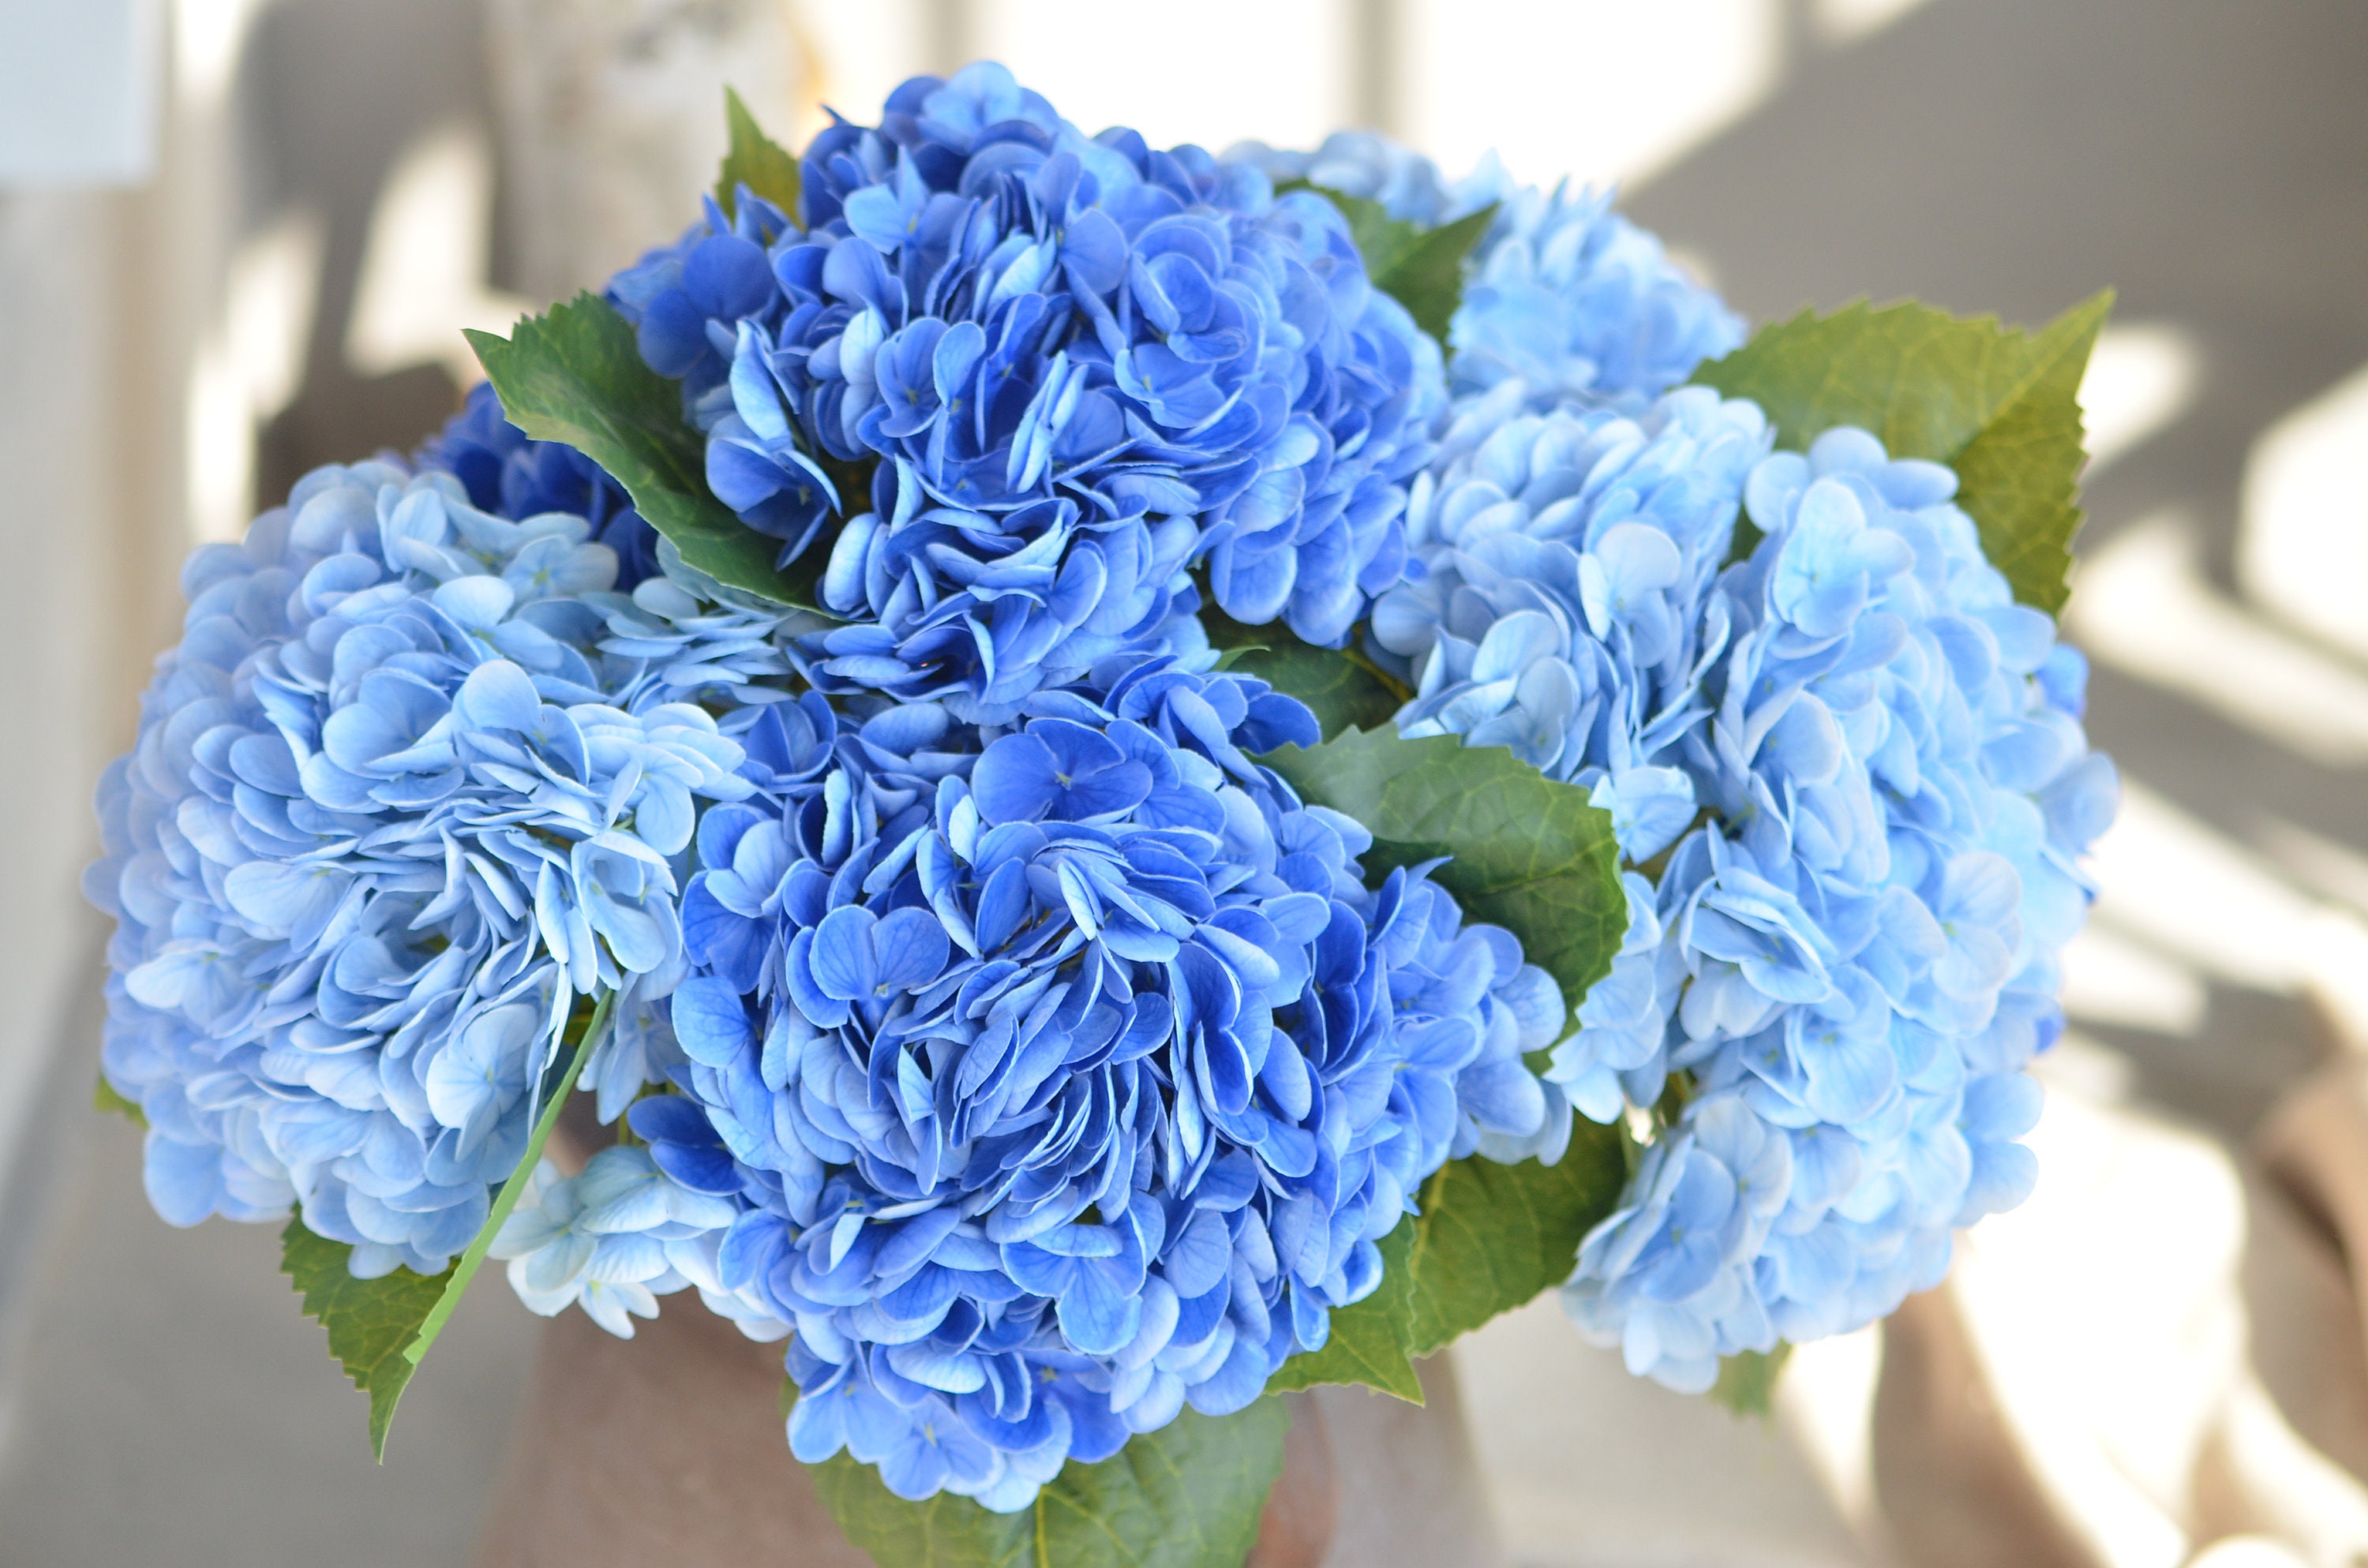 Hortensias artificiales vintage naturales y realistas al tacto, 3 piezas de  21 pulgadas, hortensias azul lago para fiesta en casa, boda, decoración de